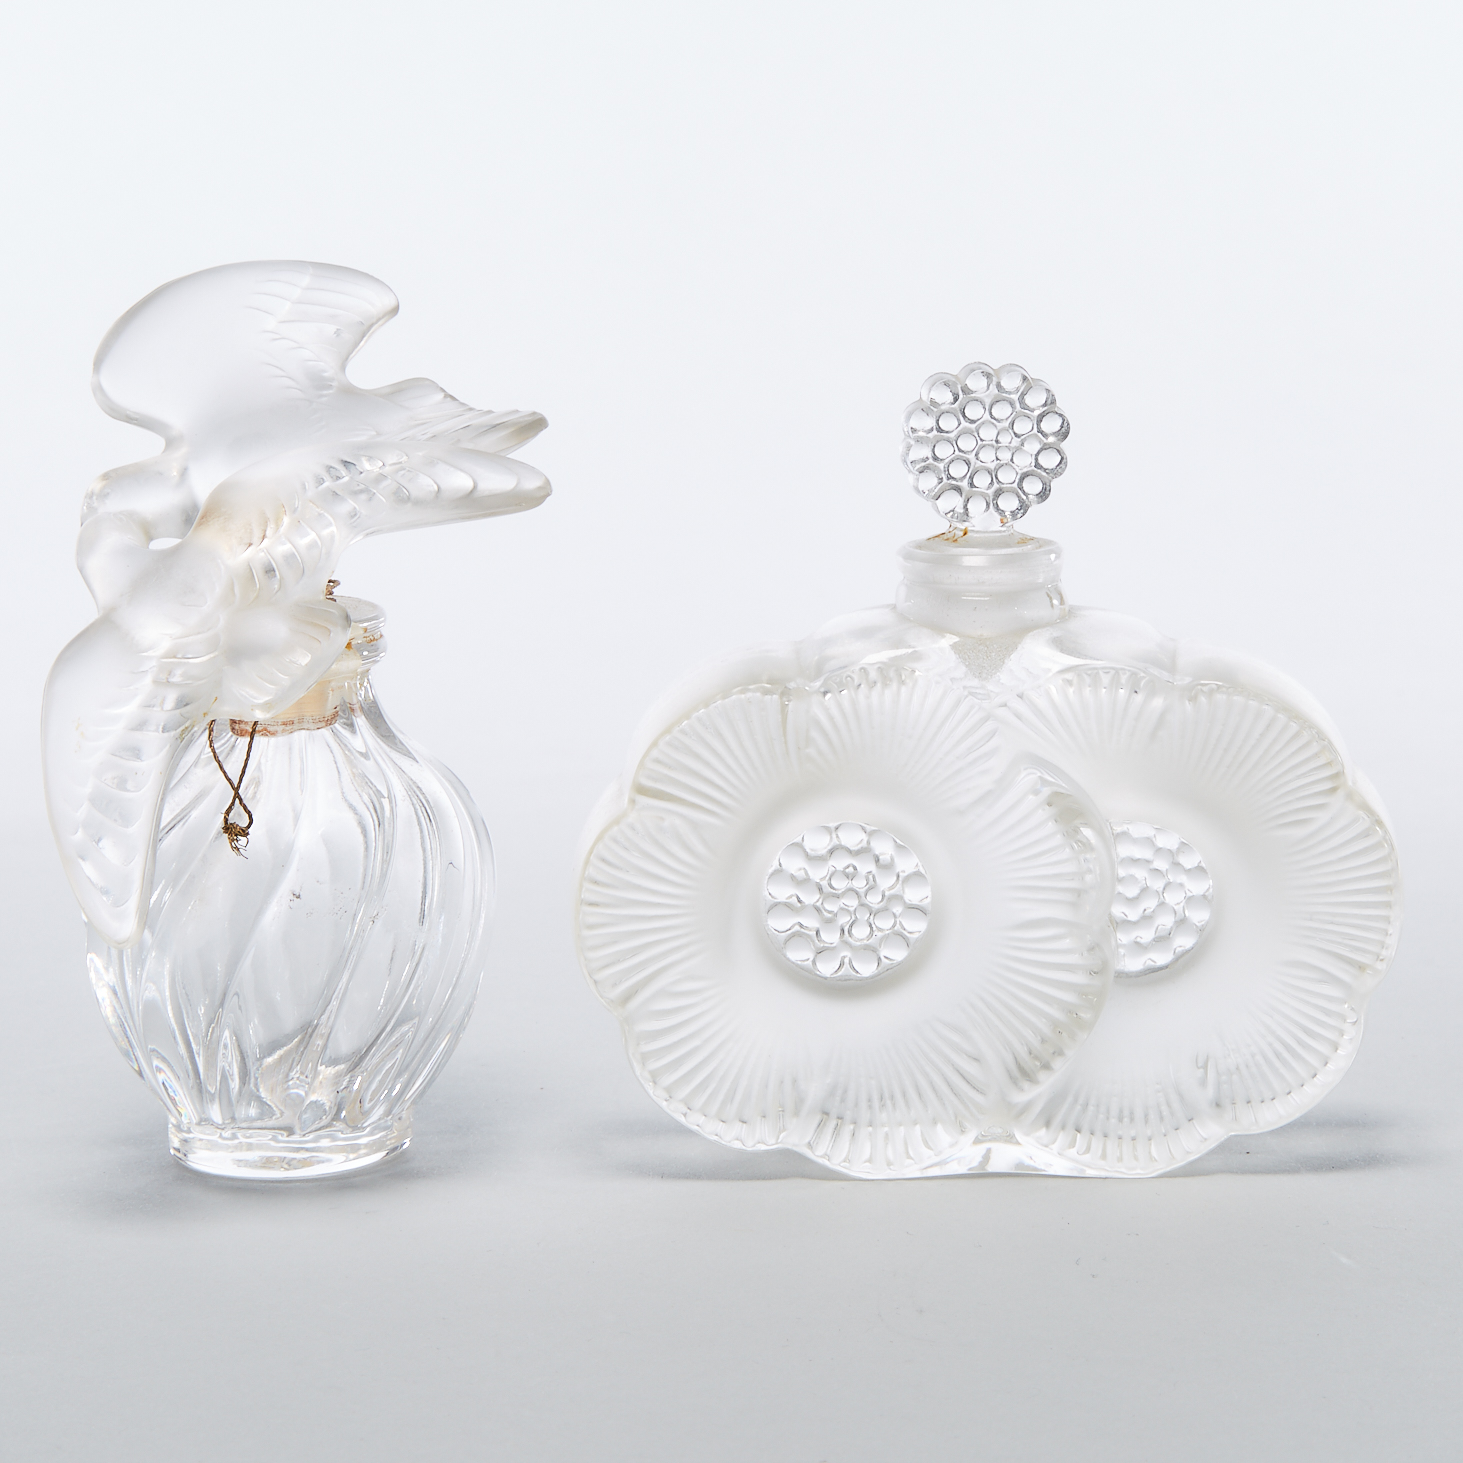 'Deux Fleurs' and 'L'Air du Temps', Two Lalique Glass Perfume Bottles, post-1945